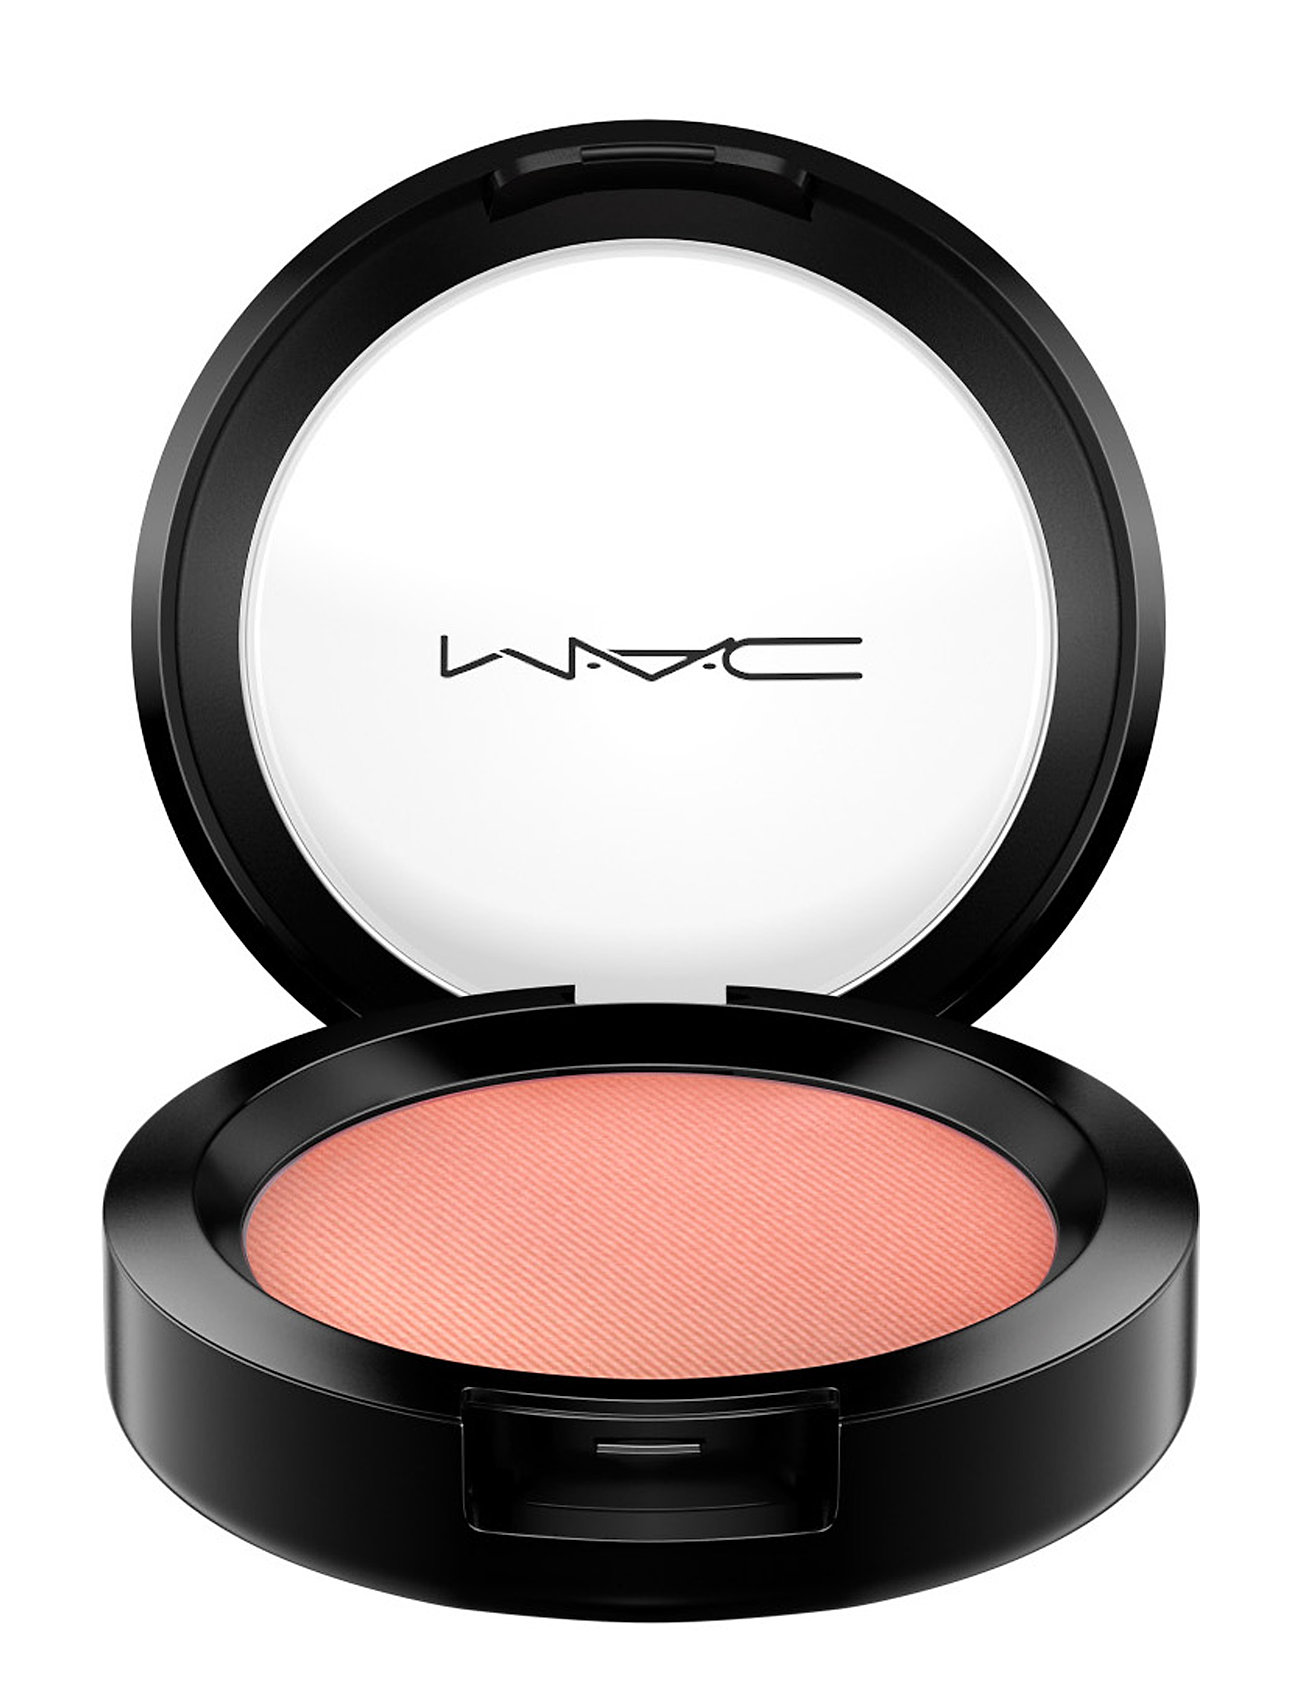 Sheert Blush Rouge Makeup Pink MAC